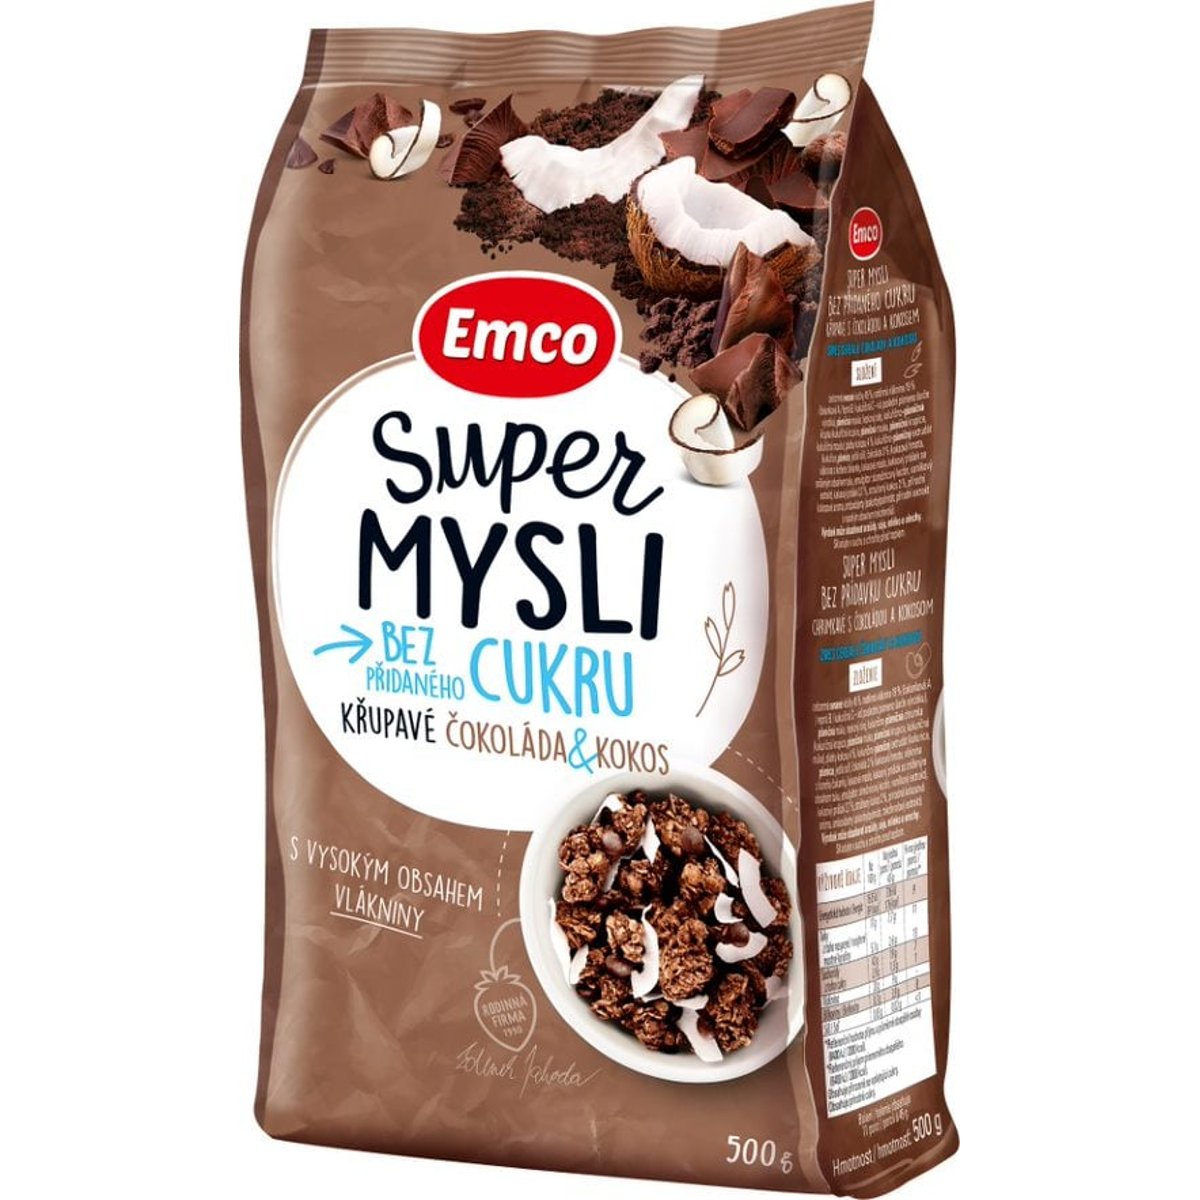 Emco Super Mysli Bez přidaného cukru Čokoláda & Kokos